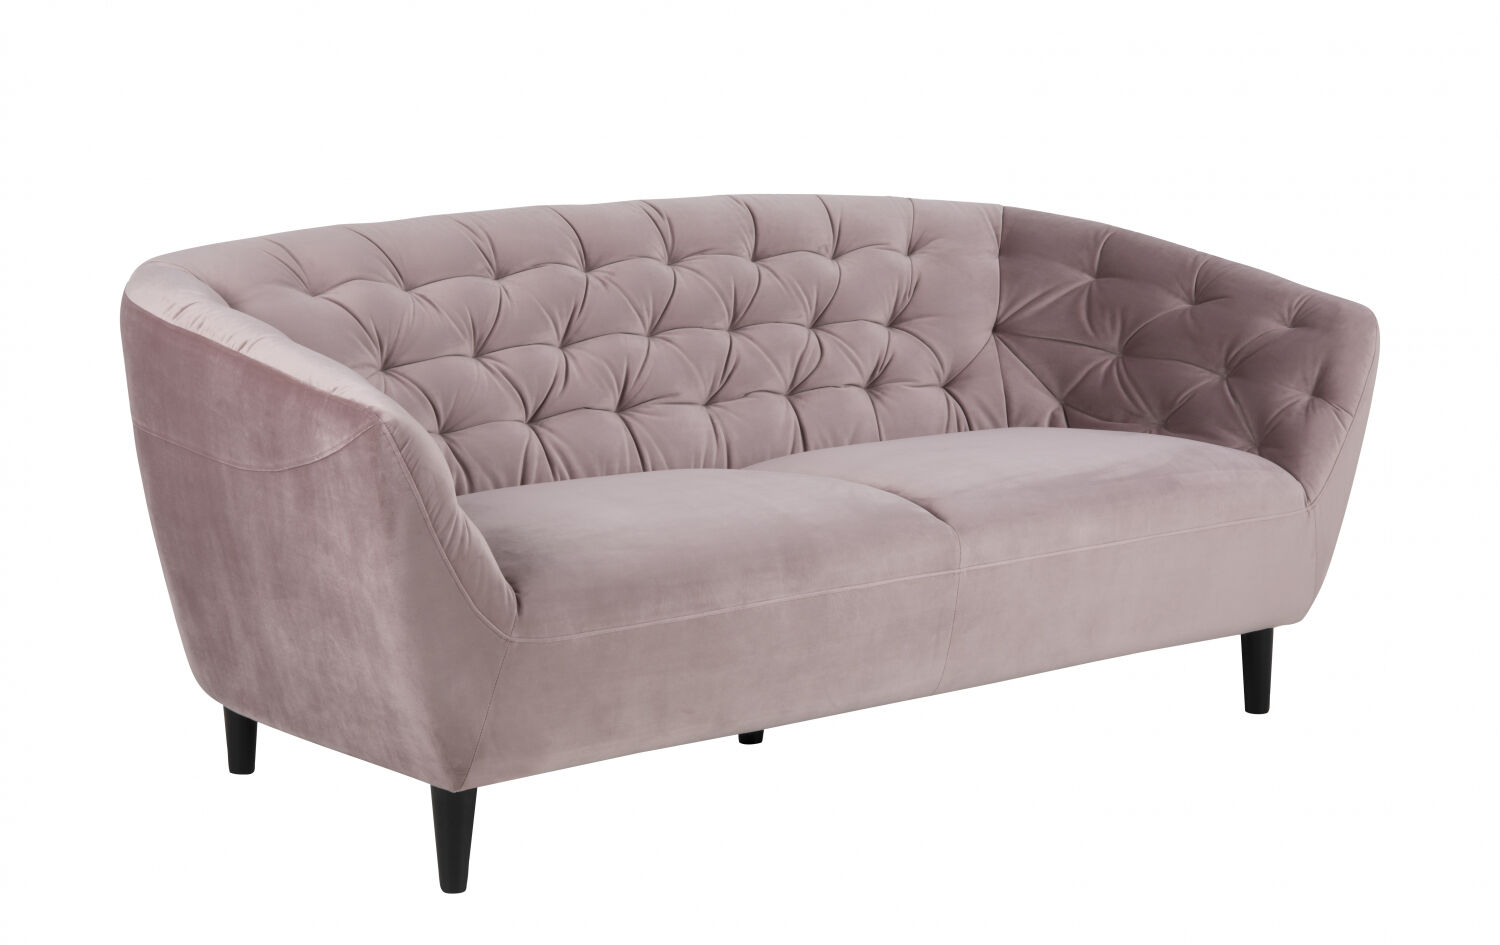 Rian sofa 3 seter støvet rosa med svarte ben.